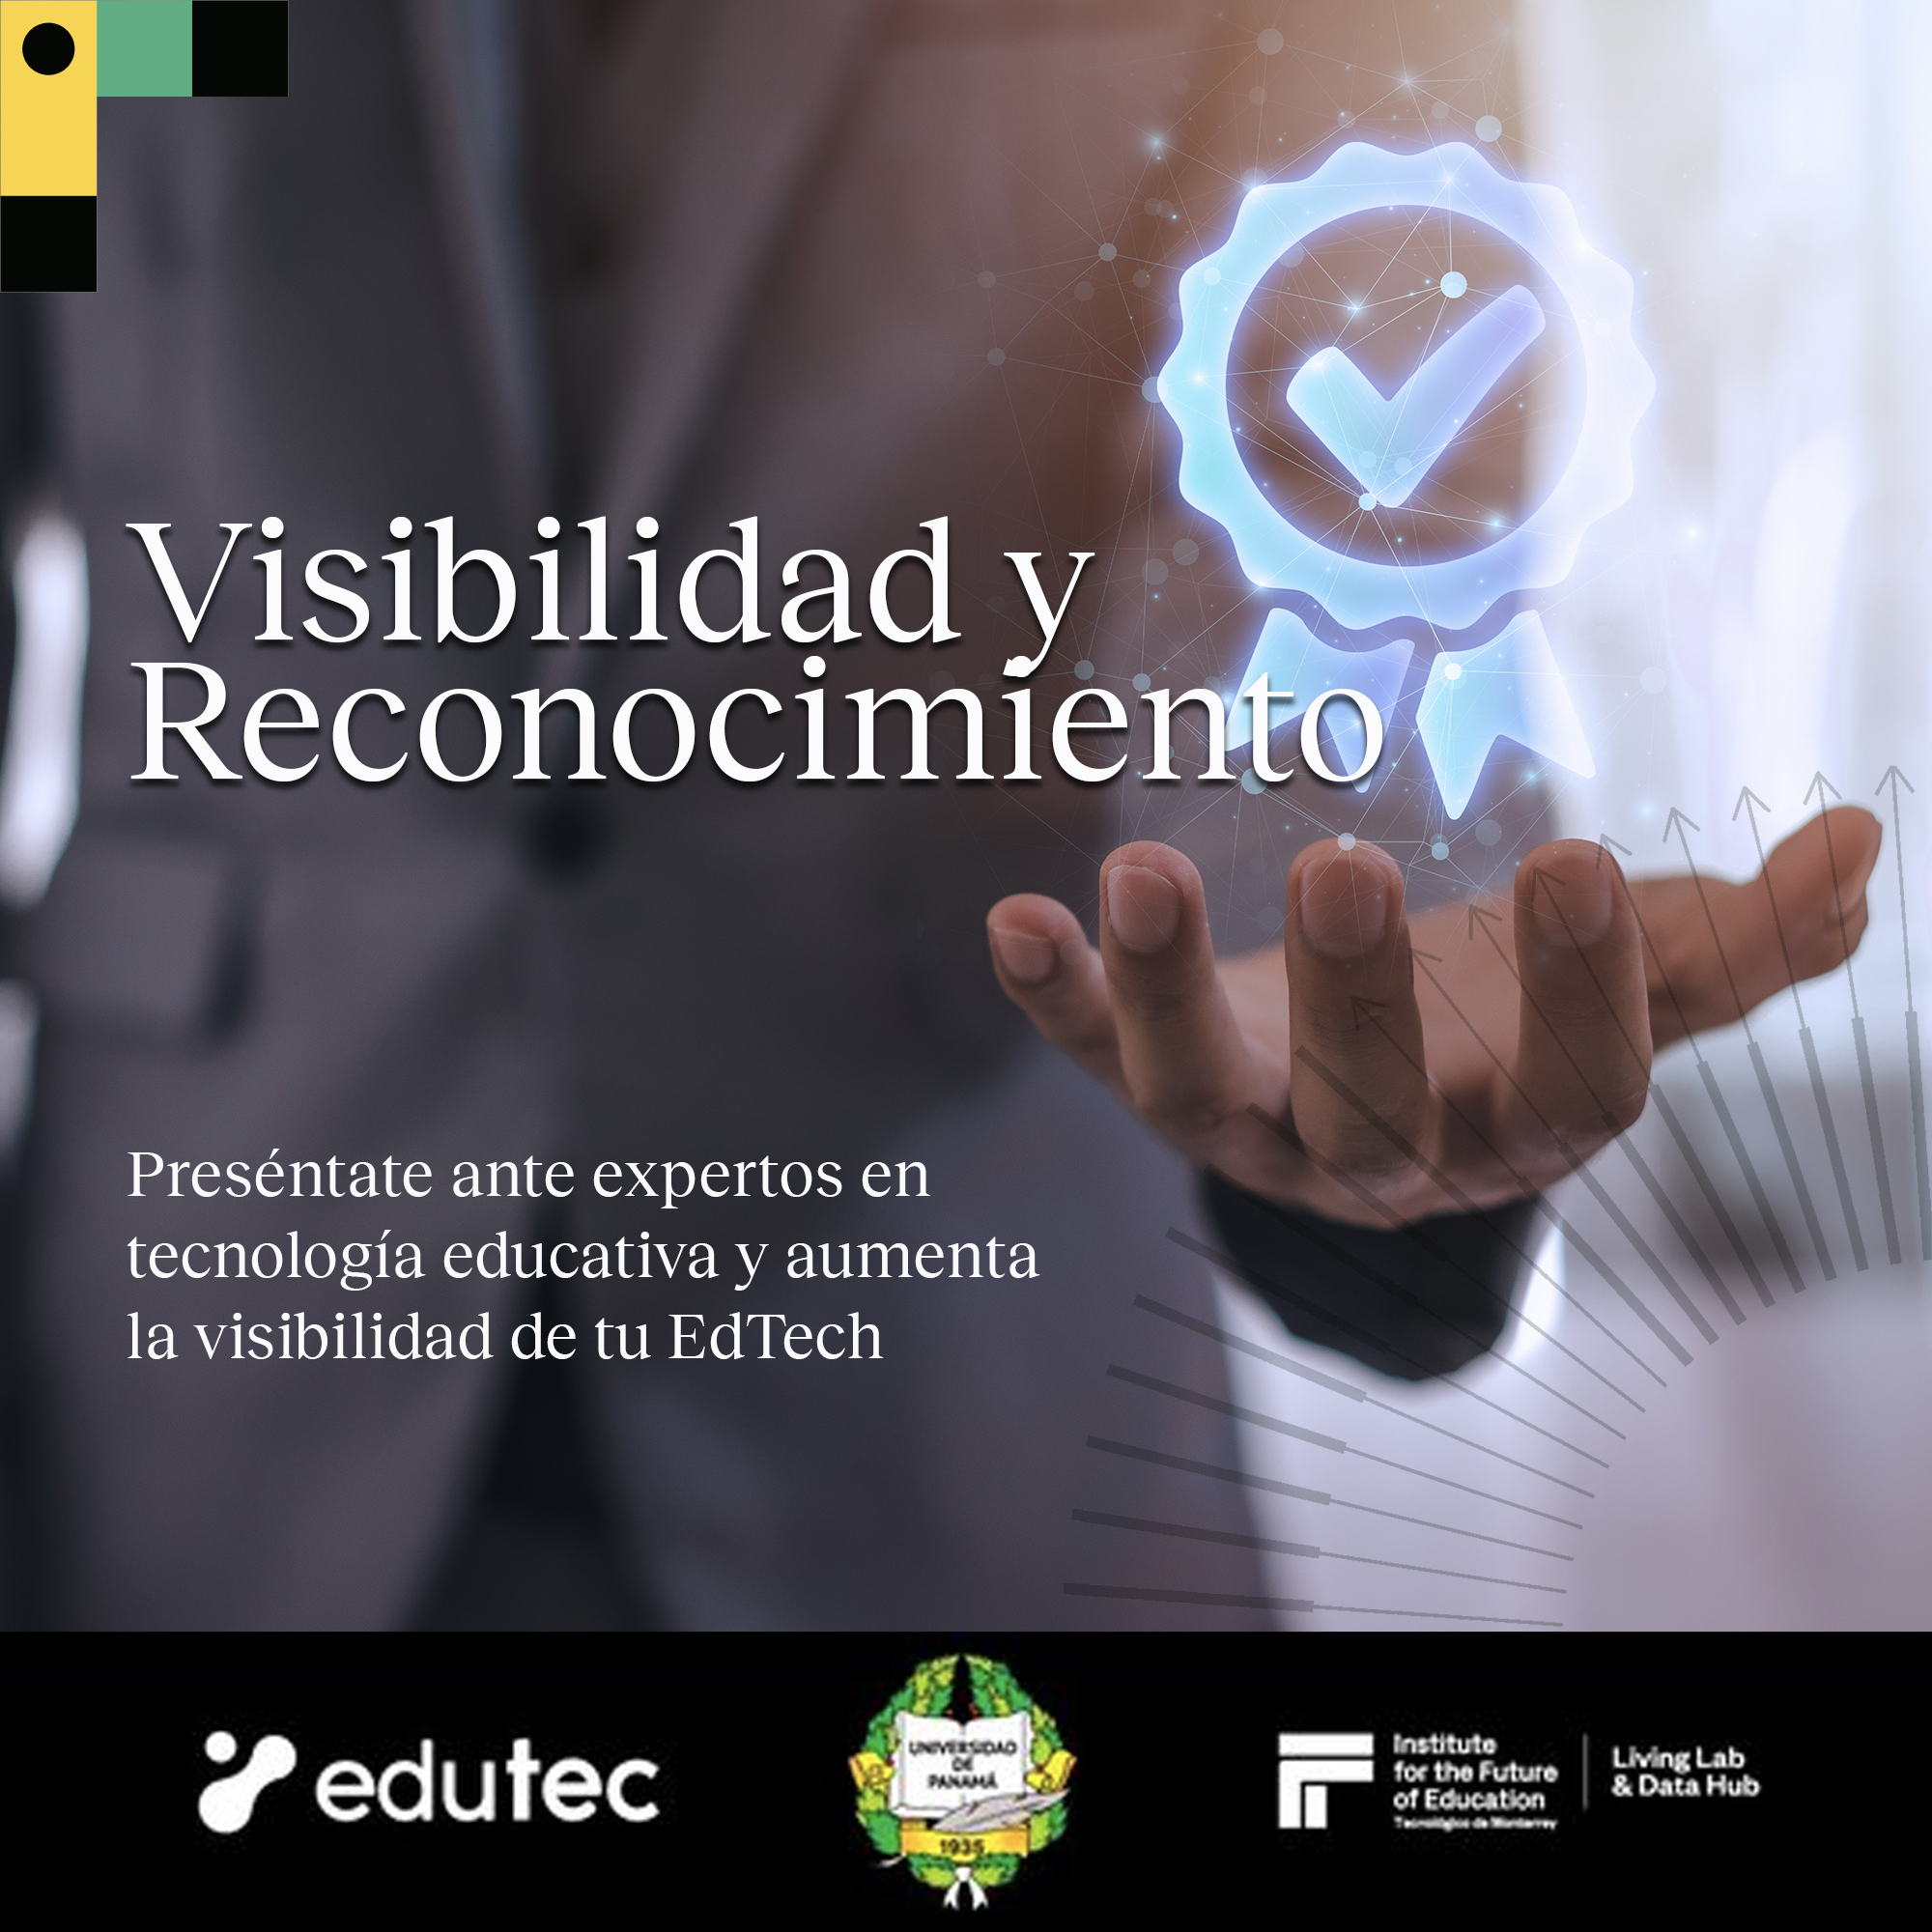 Visibilidad y
Reconocimiers

Preséntate ante expertos en
tecnologia educativa y aumenta
la visibilidad de tu EdTech

 

& edutec